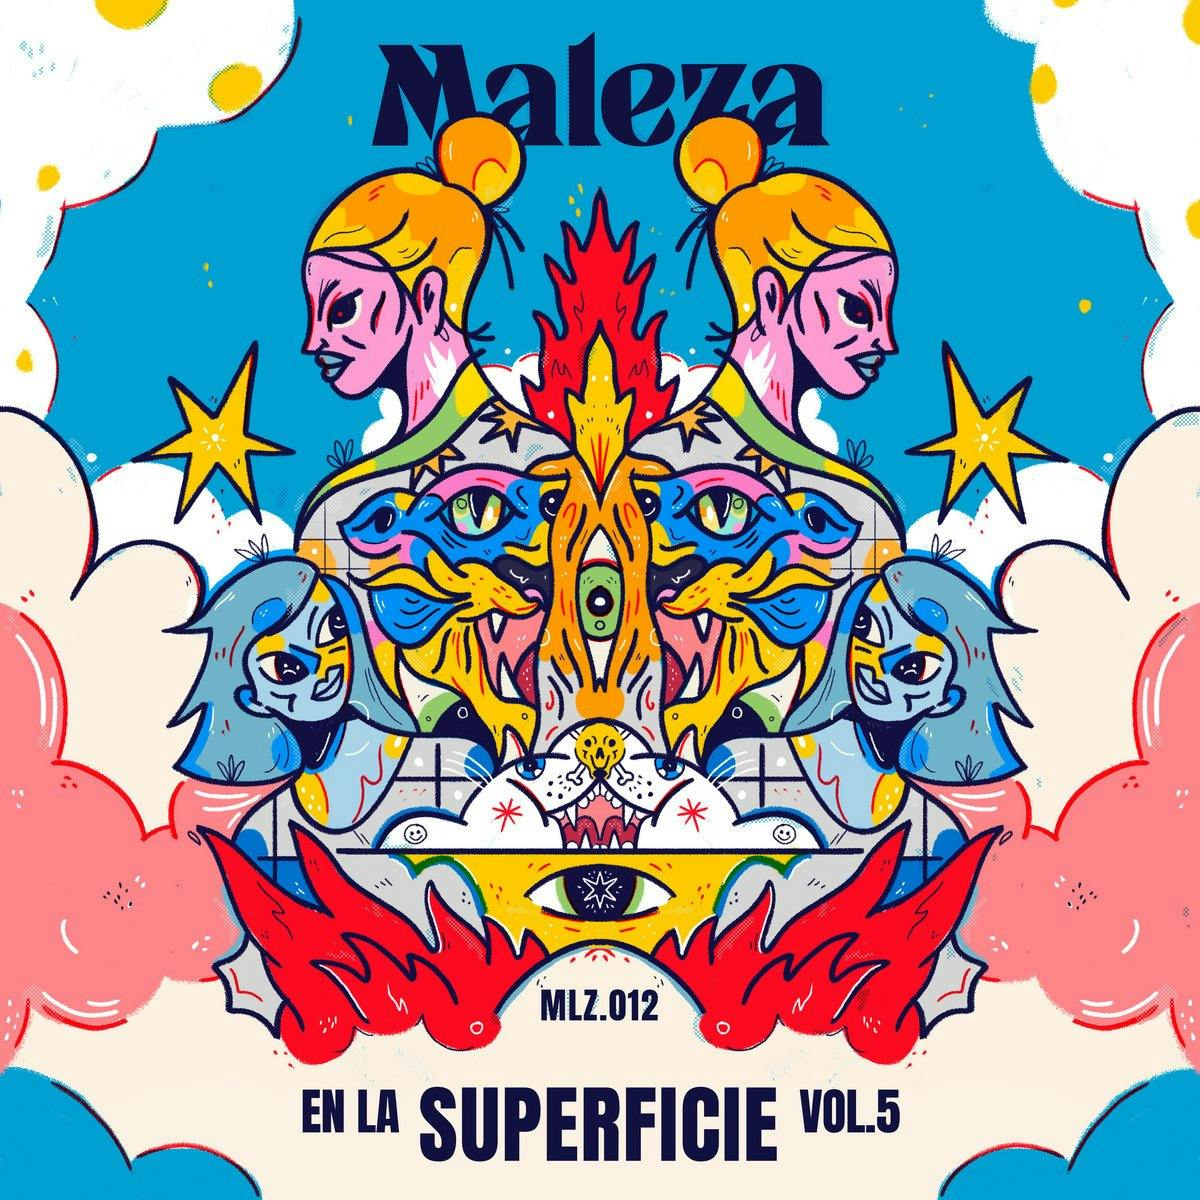 Maleza Recordings lanza nuevo volumen del compilado En la Superficie